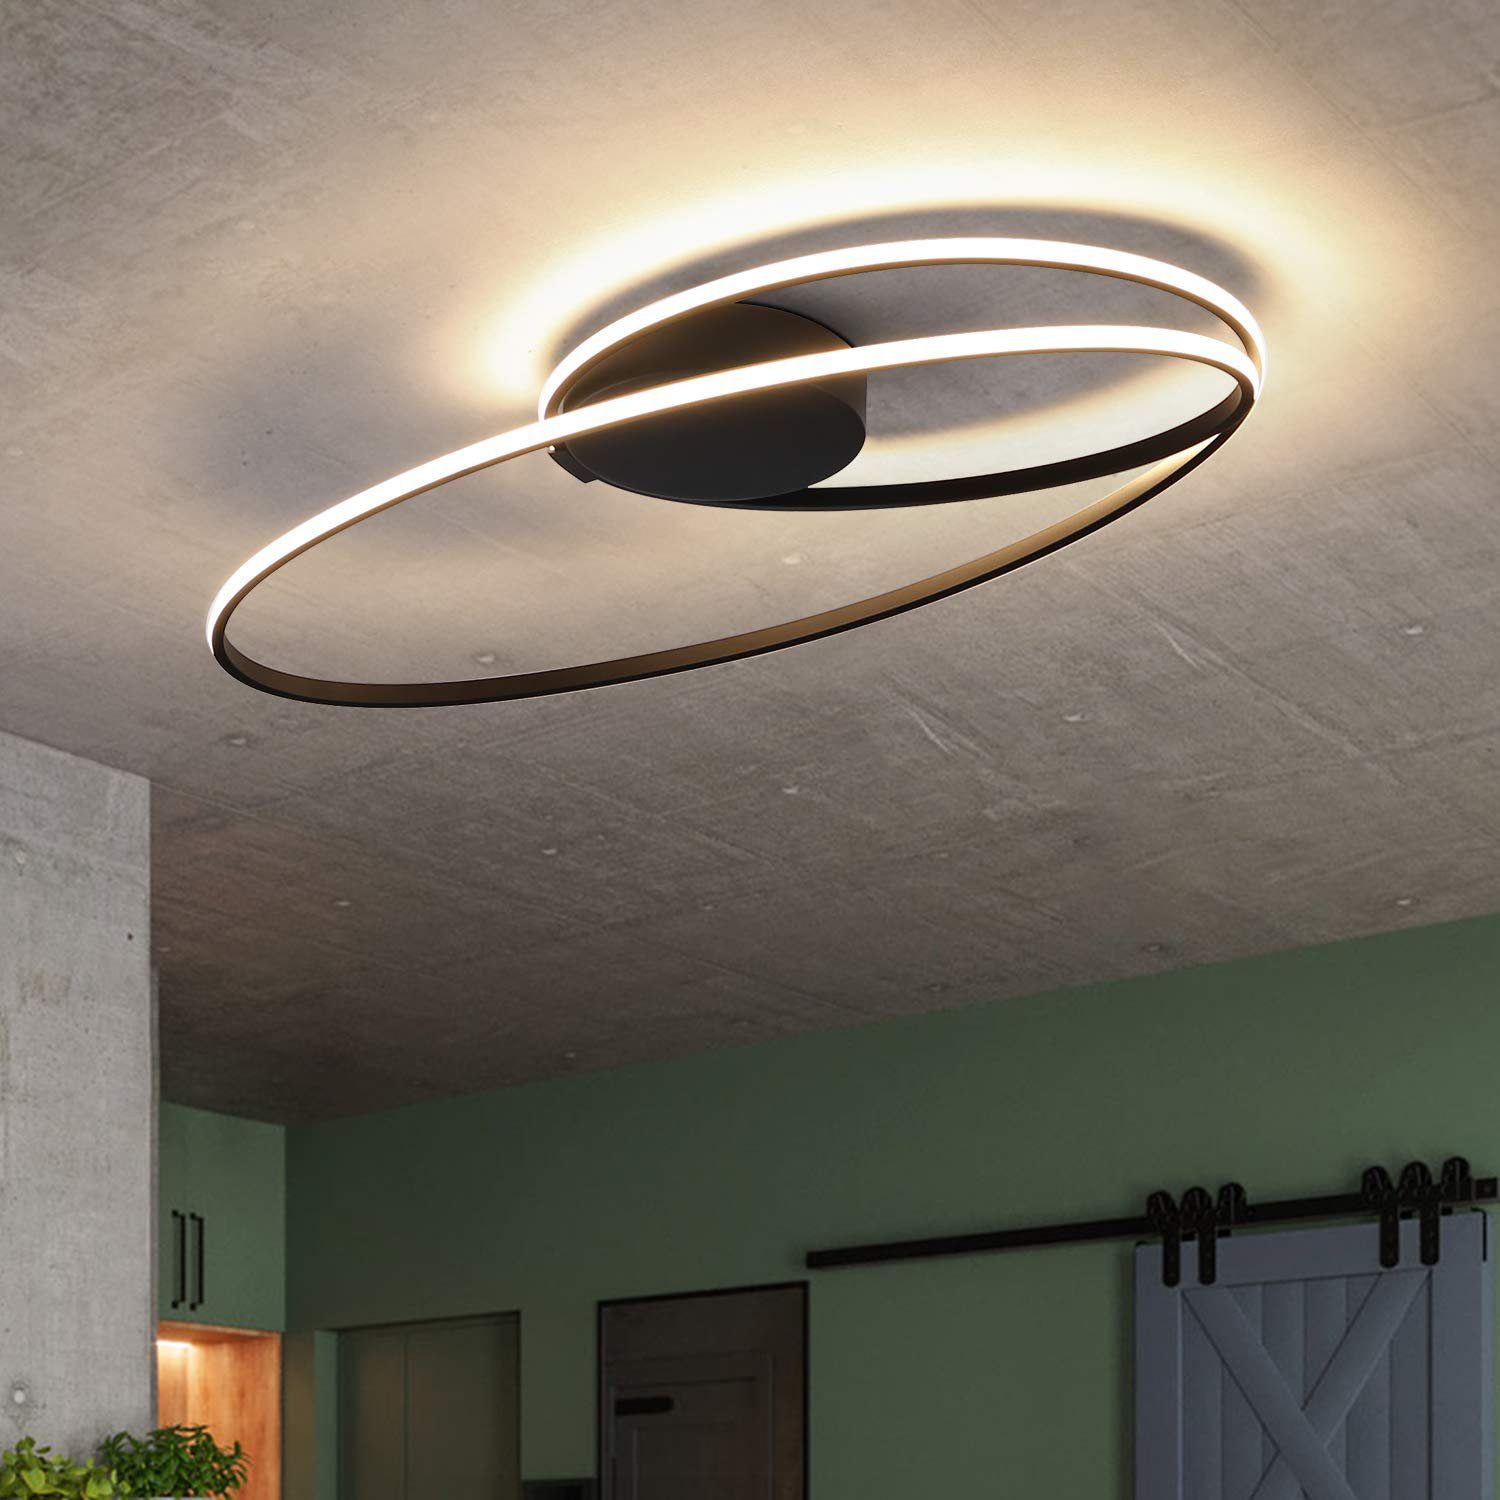 ZMH LED Deckenleuchte »ZMH LED Deckenleuchte Modern Wohnzimmer Deckenlampe  Schwarz in Ring-Design 36W 3000K Warmweiß Innen Deckenbeleuchtung«, LED  fest integriert, Warmweiß